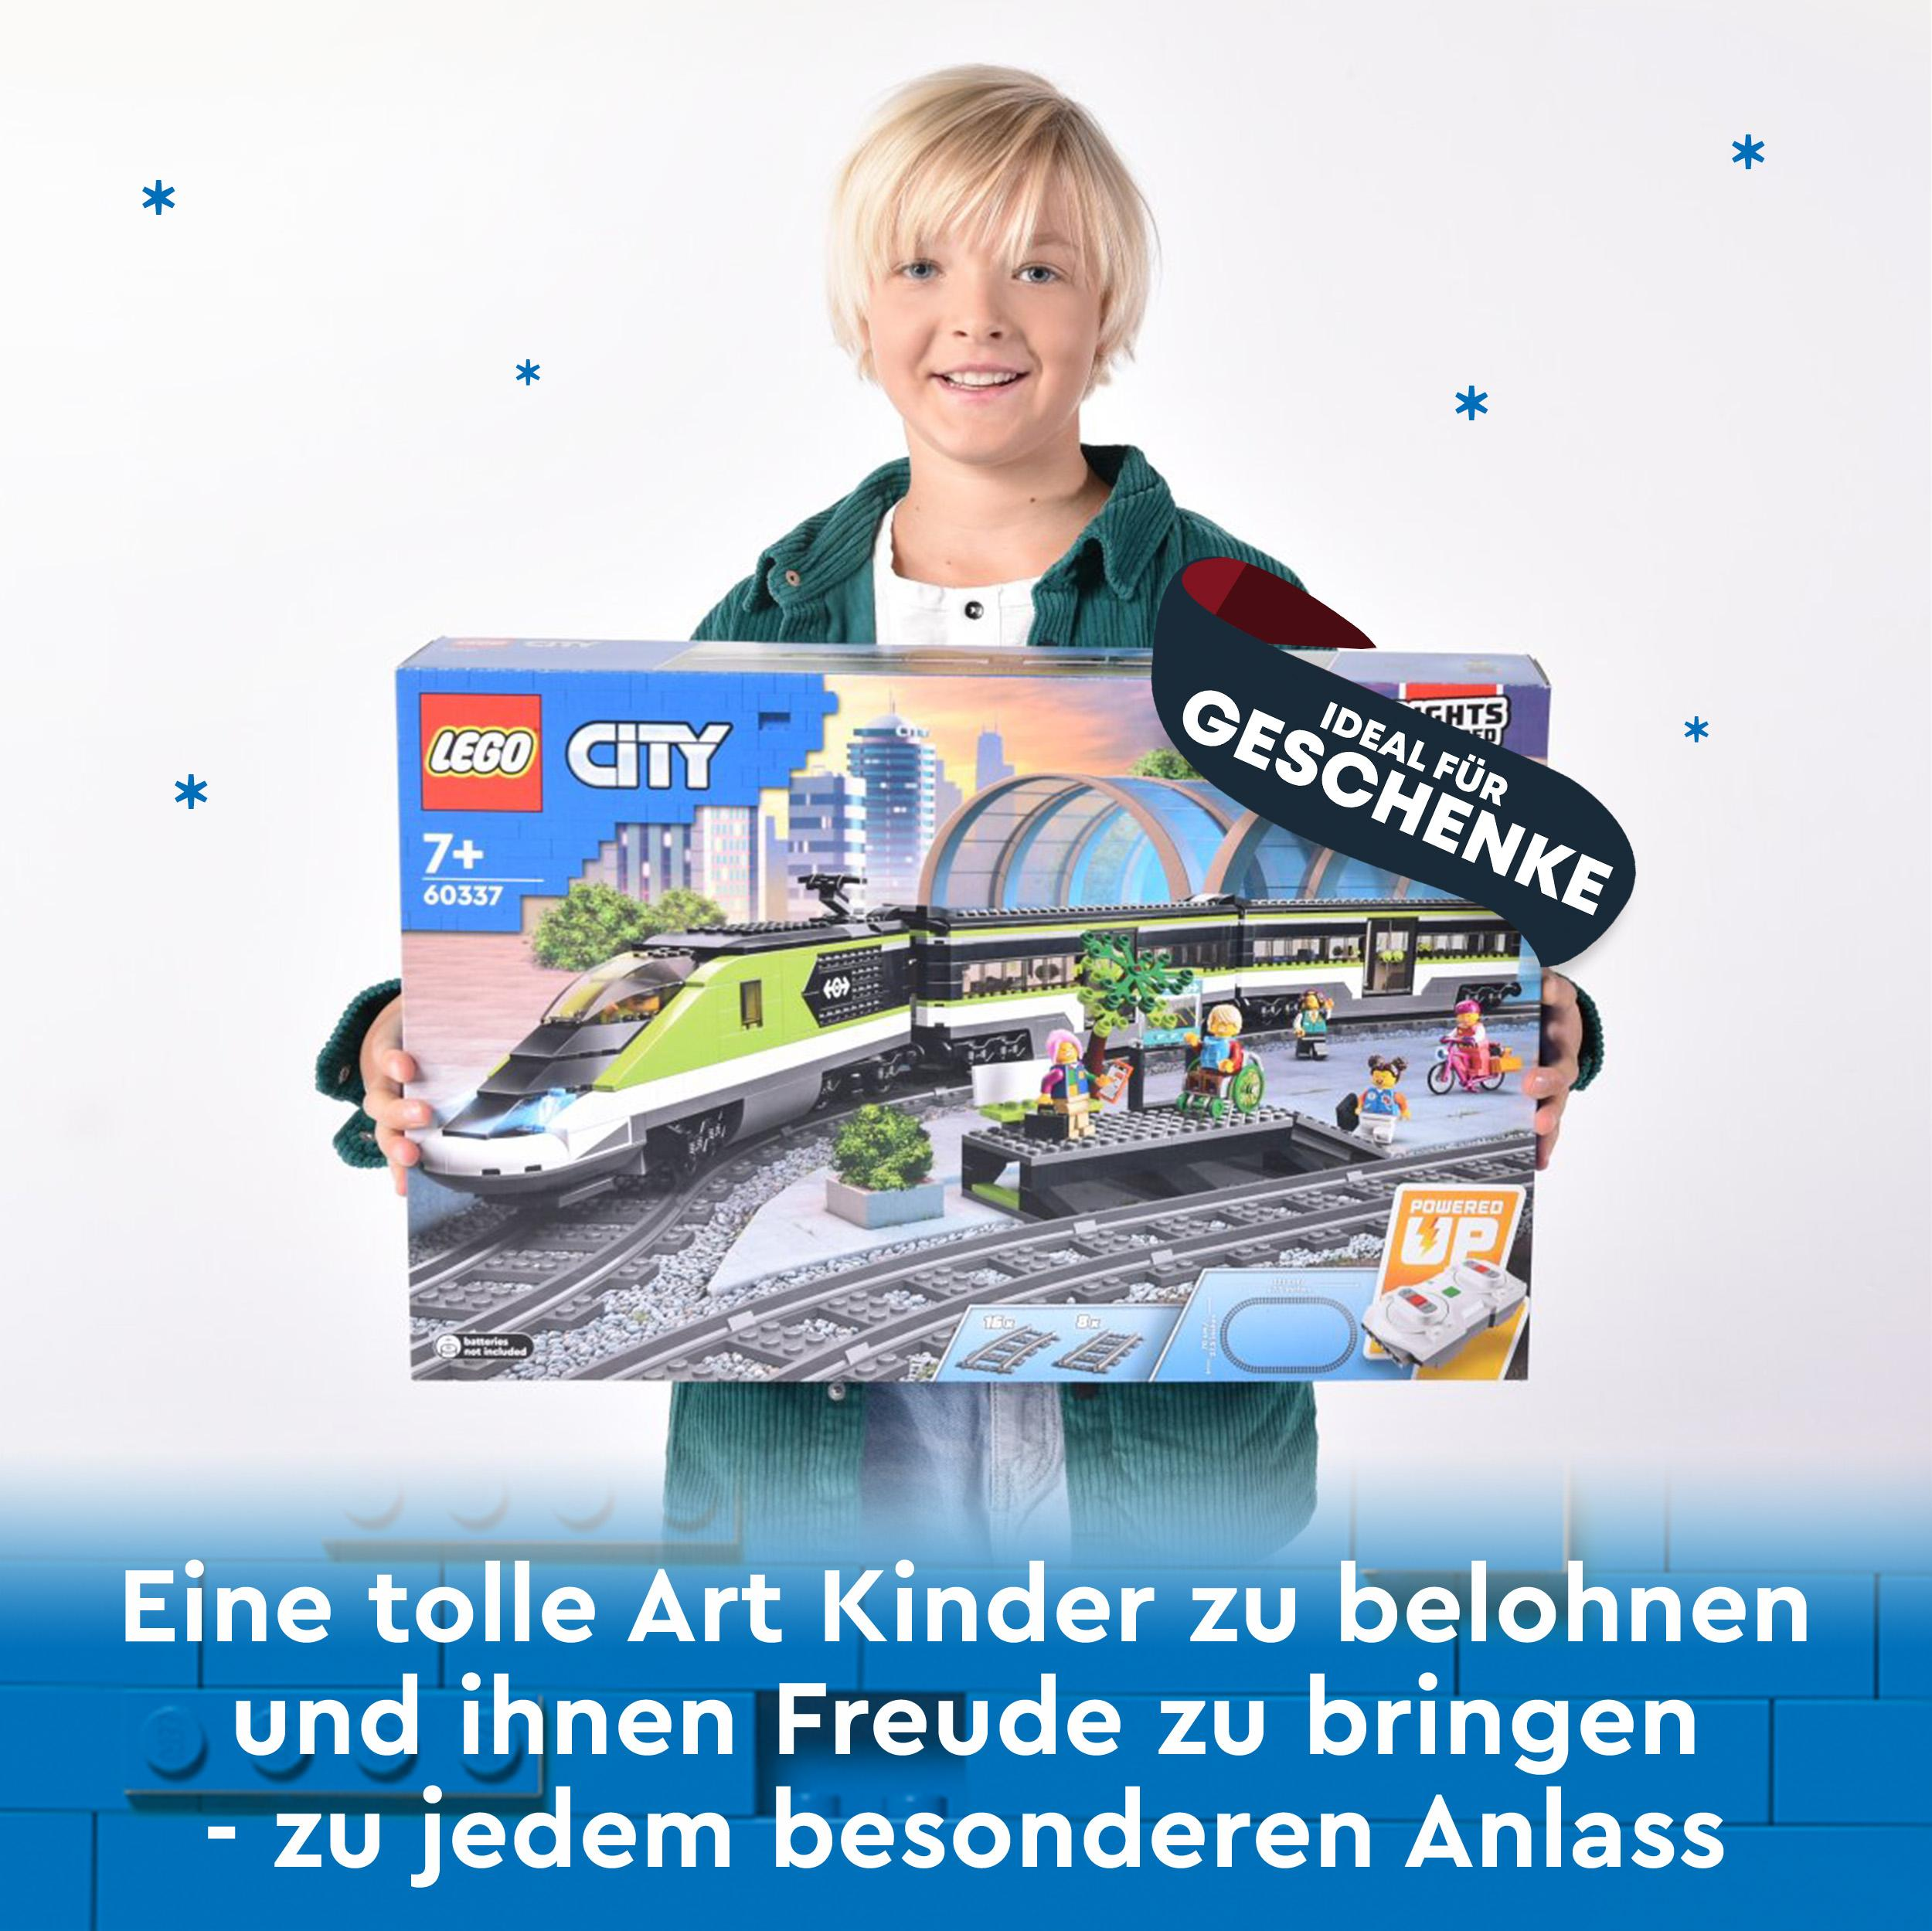 Personen-Schnellzug Mehrfarbig City Bausatz, 60337 LEGO